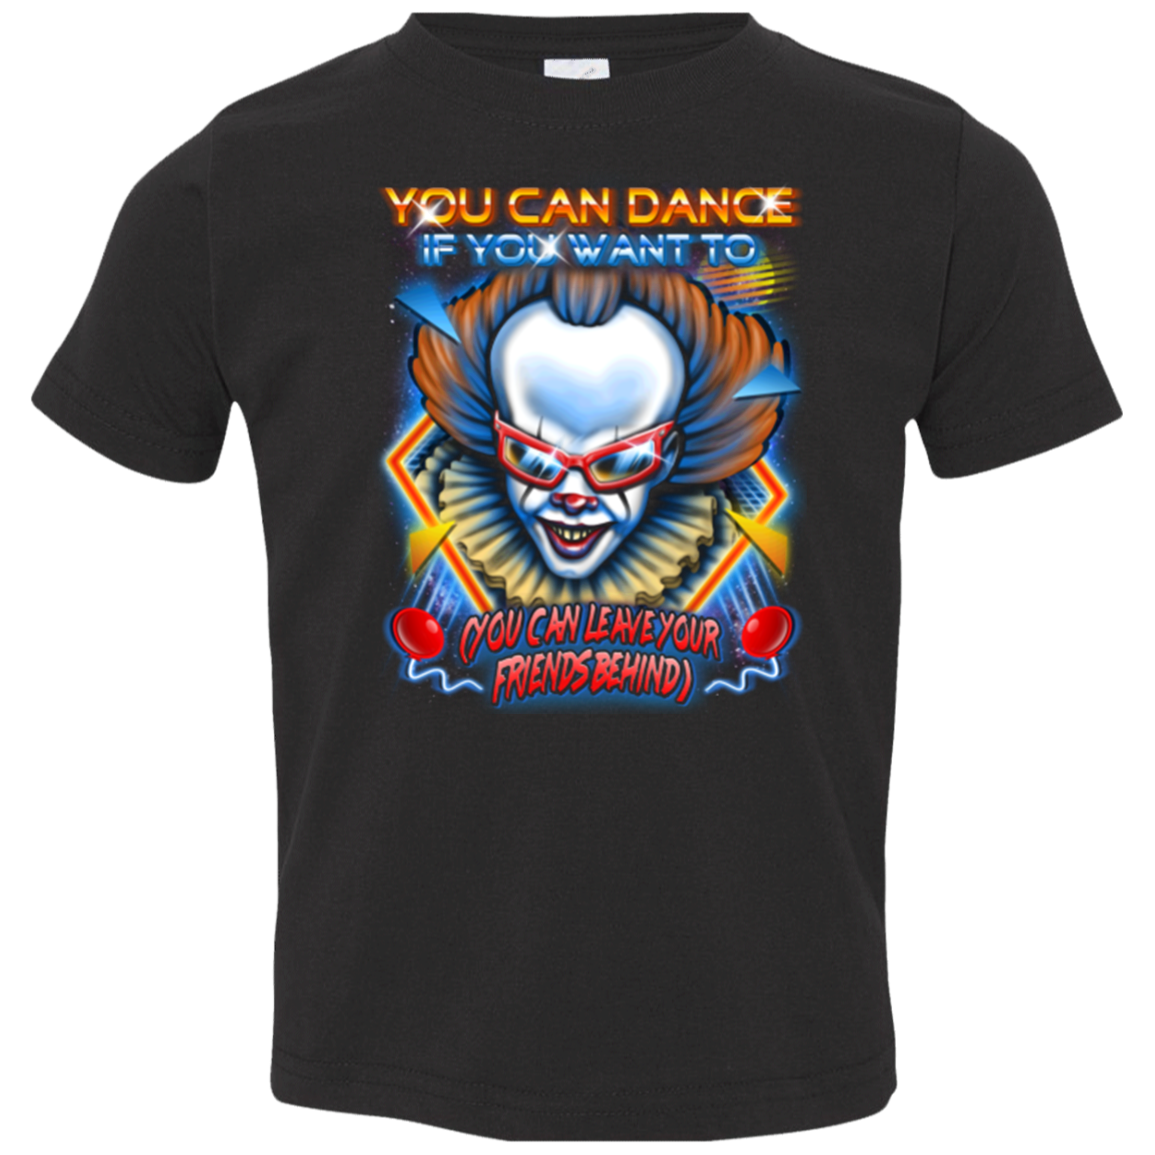 You can Dance Toddler Premium T-Shirt